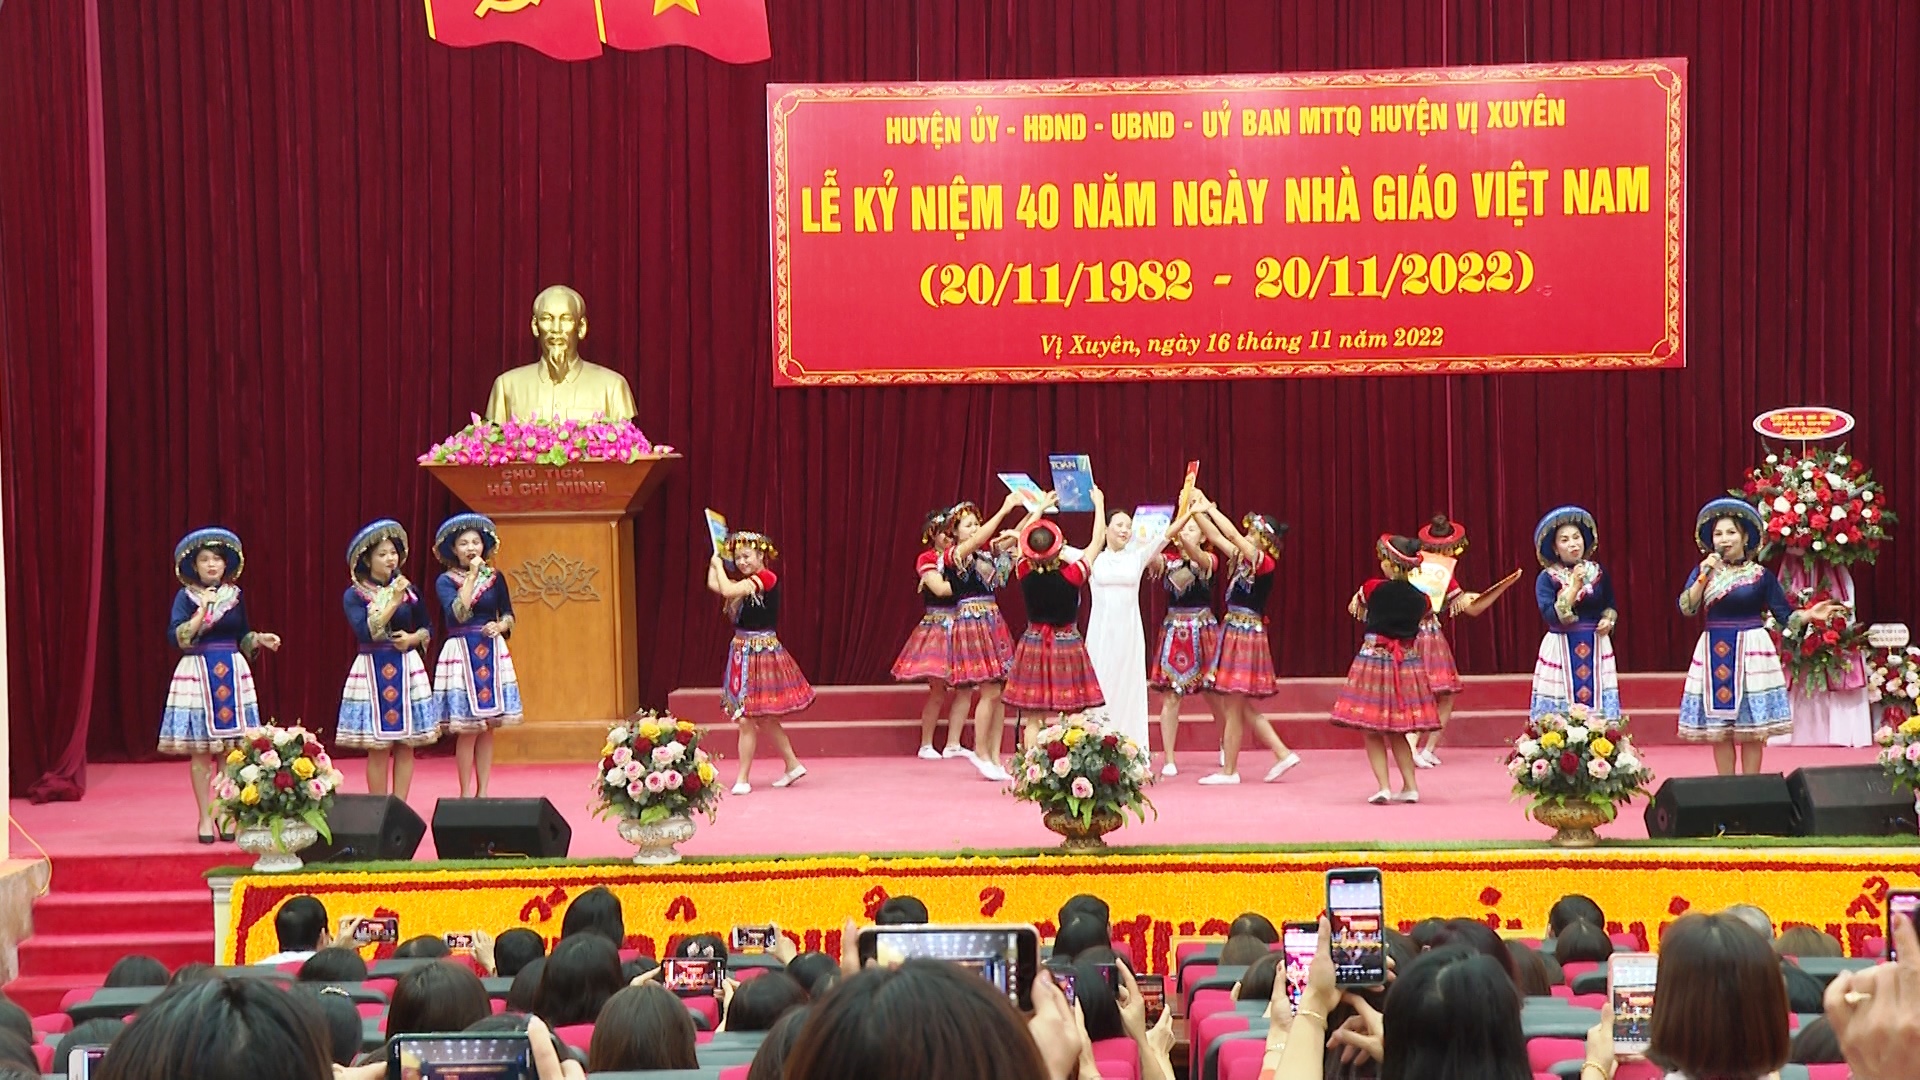 Vị Xuyên kỷ niệm 40 năm ngày Nhà giáo Việt Nam.